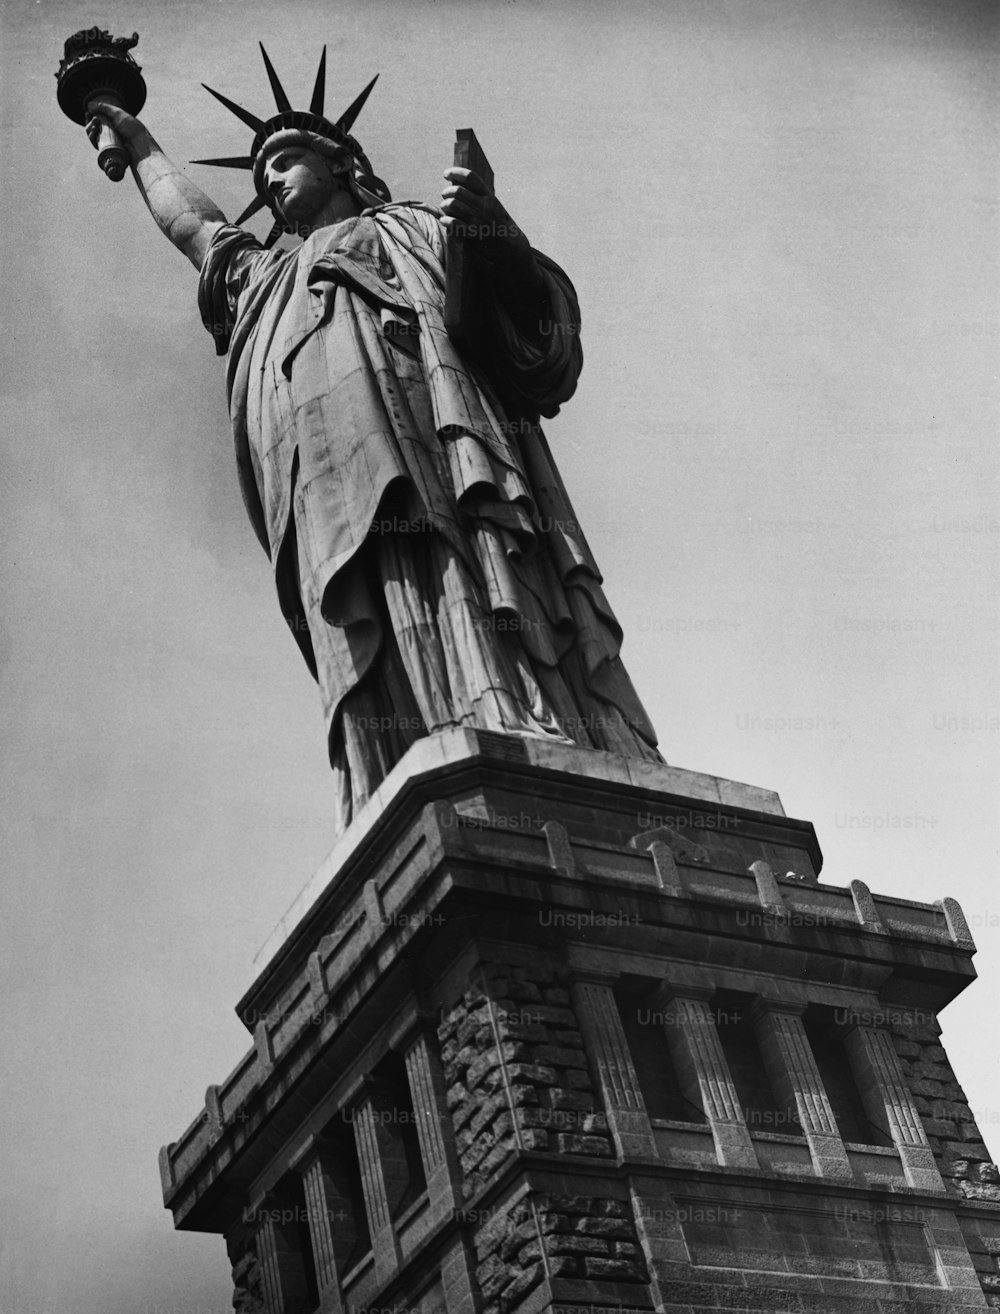 La Statue de la Liberté sur Liberty Island à New York, États-Unis, vers 1950.  (Photo de George Marks/Retrofile/Getty Images)